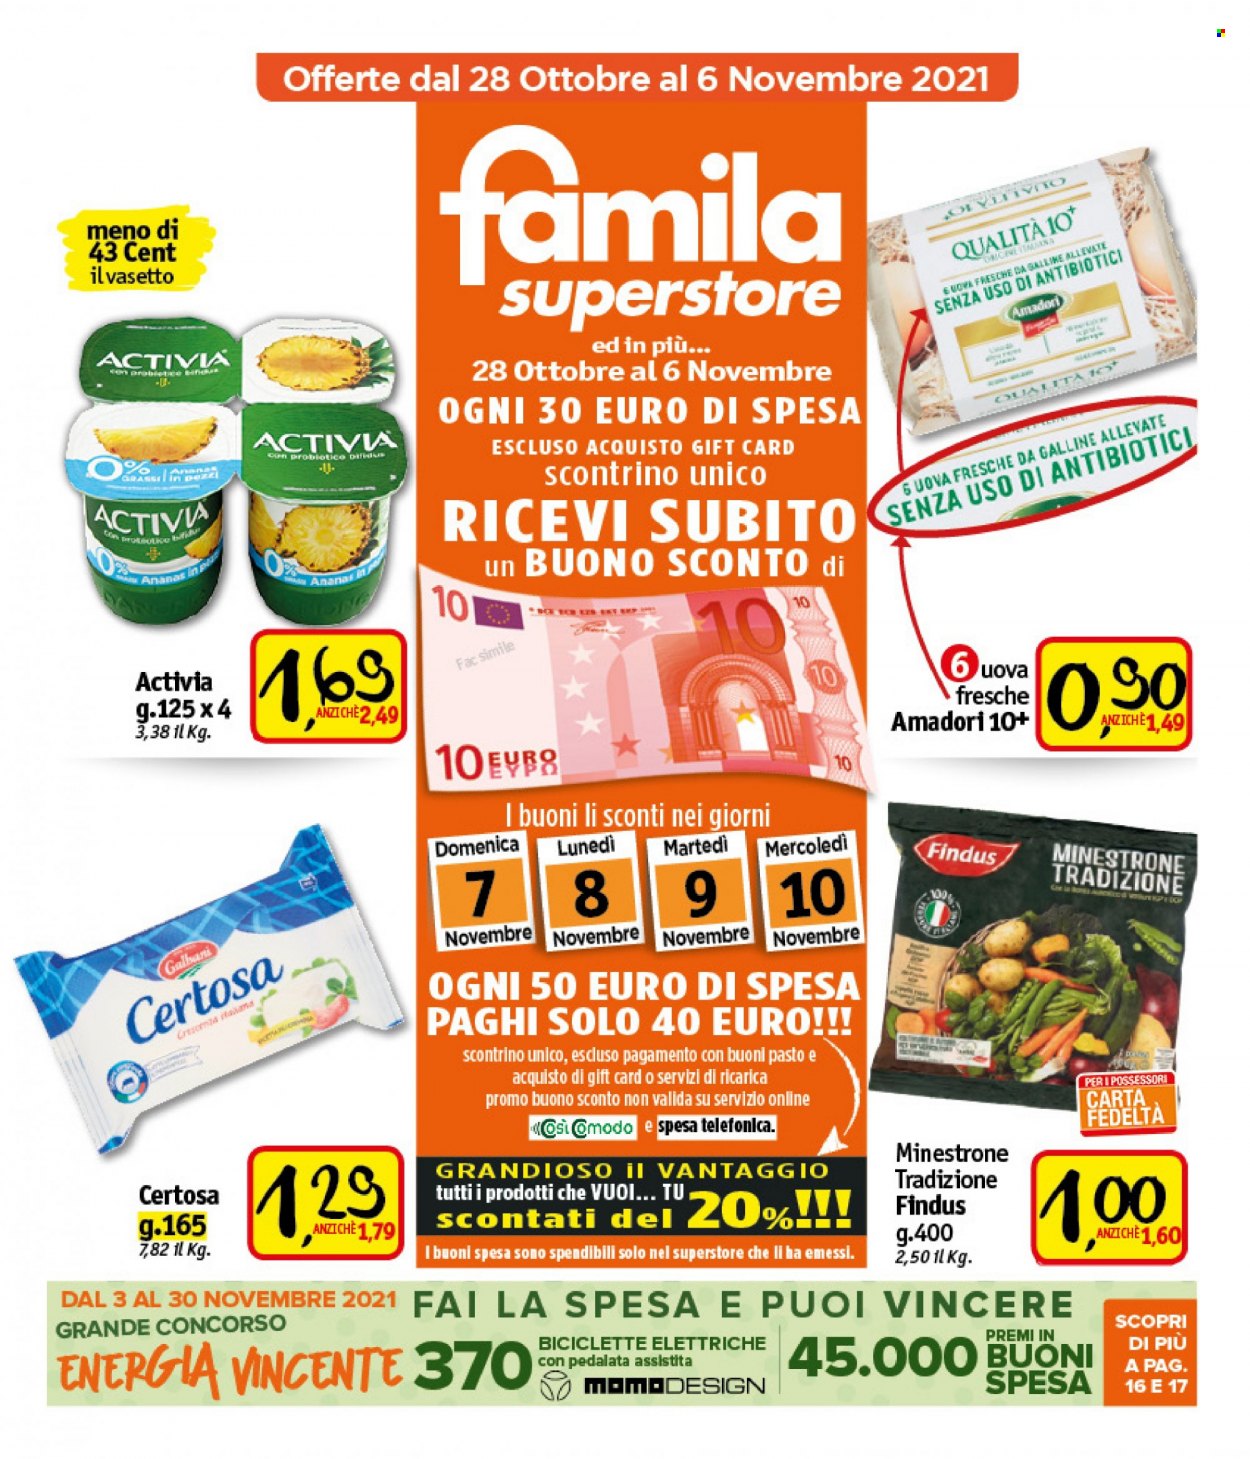 thumbnail - Volantino Famila - 28/10/2021 - 6/11/2021 - Prodotti in offerta - Amadori, Findus, minestrone, Galbani, formaggio, Certosa, Activia, uova, bici elettrica, bicicletta. Pagina 1.